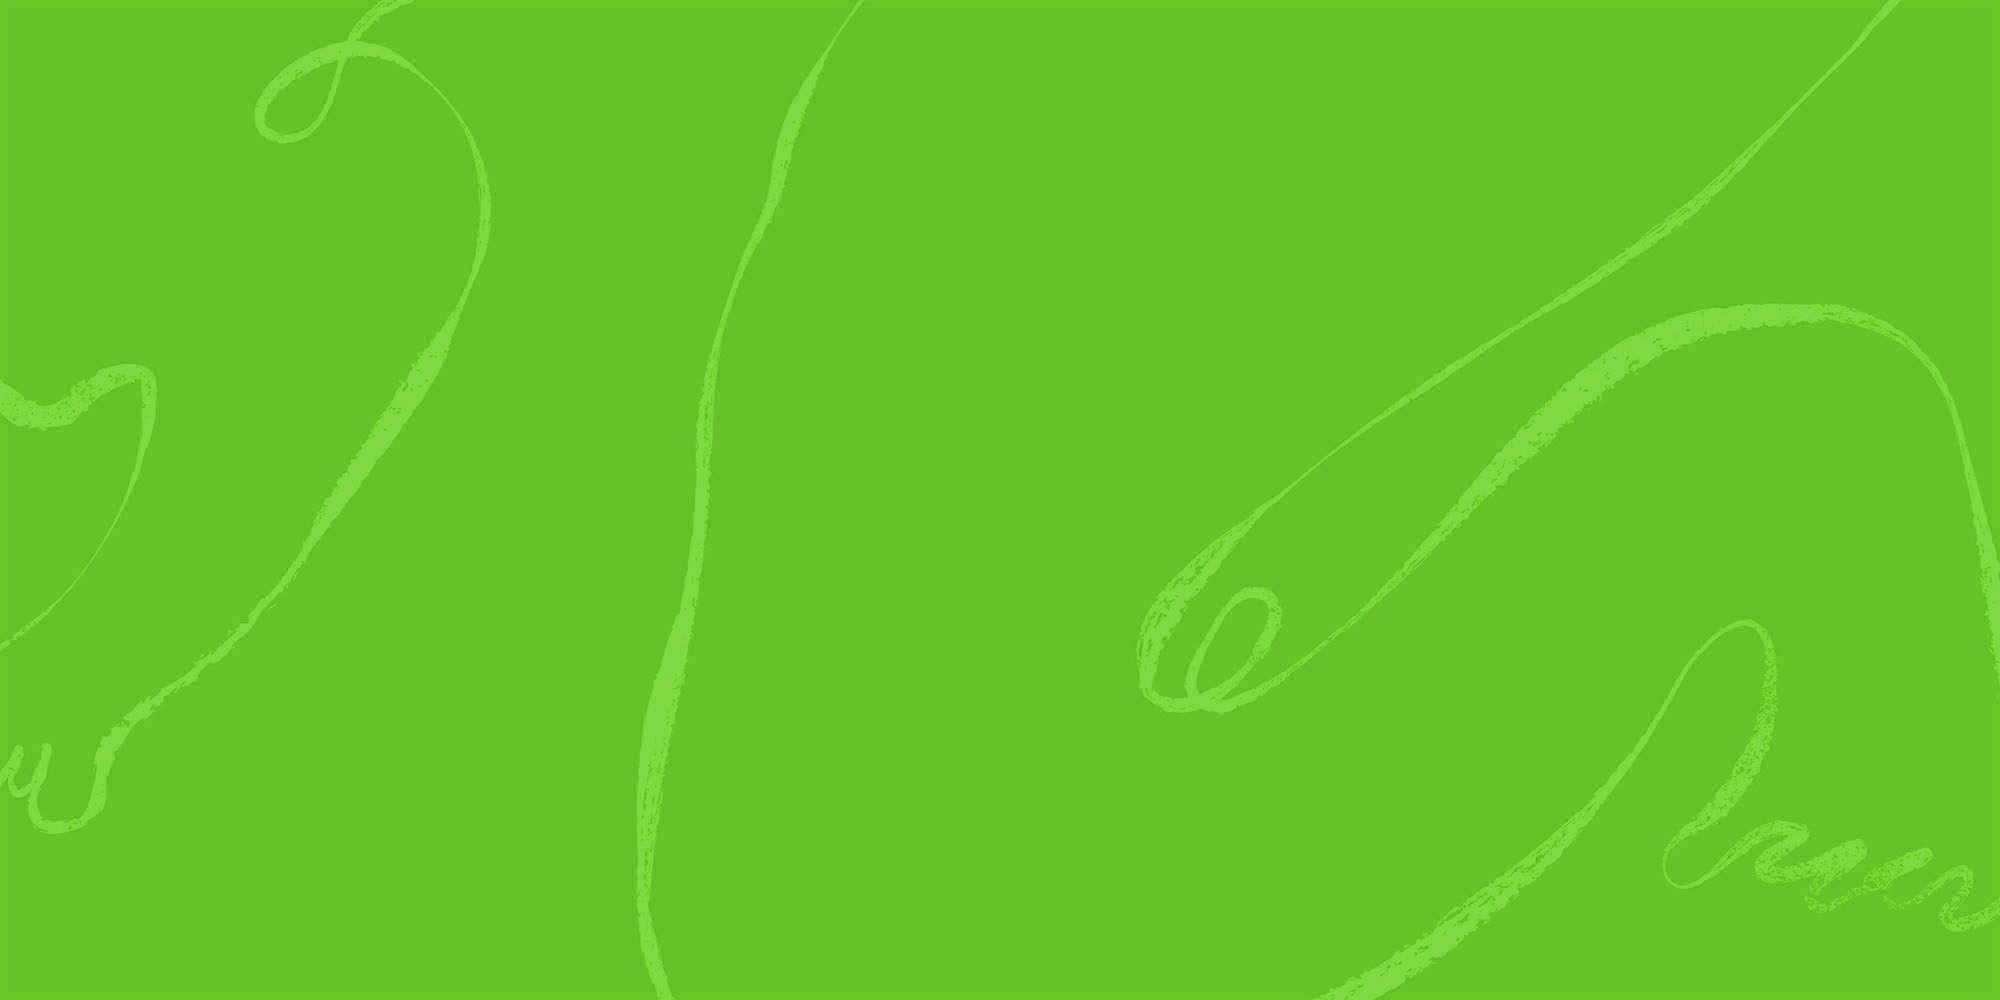 Deloitte Digital human sketch in green